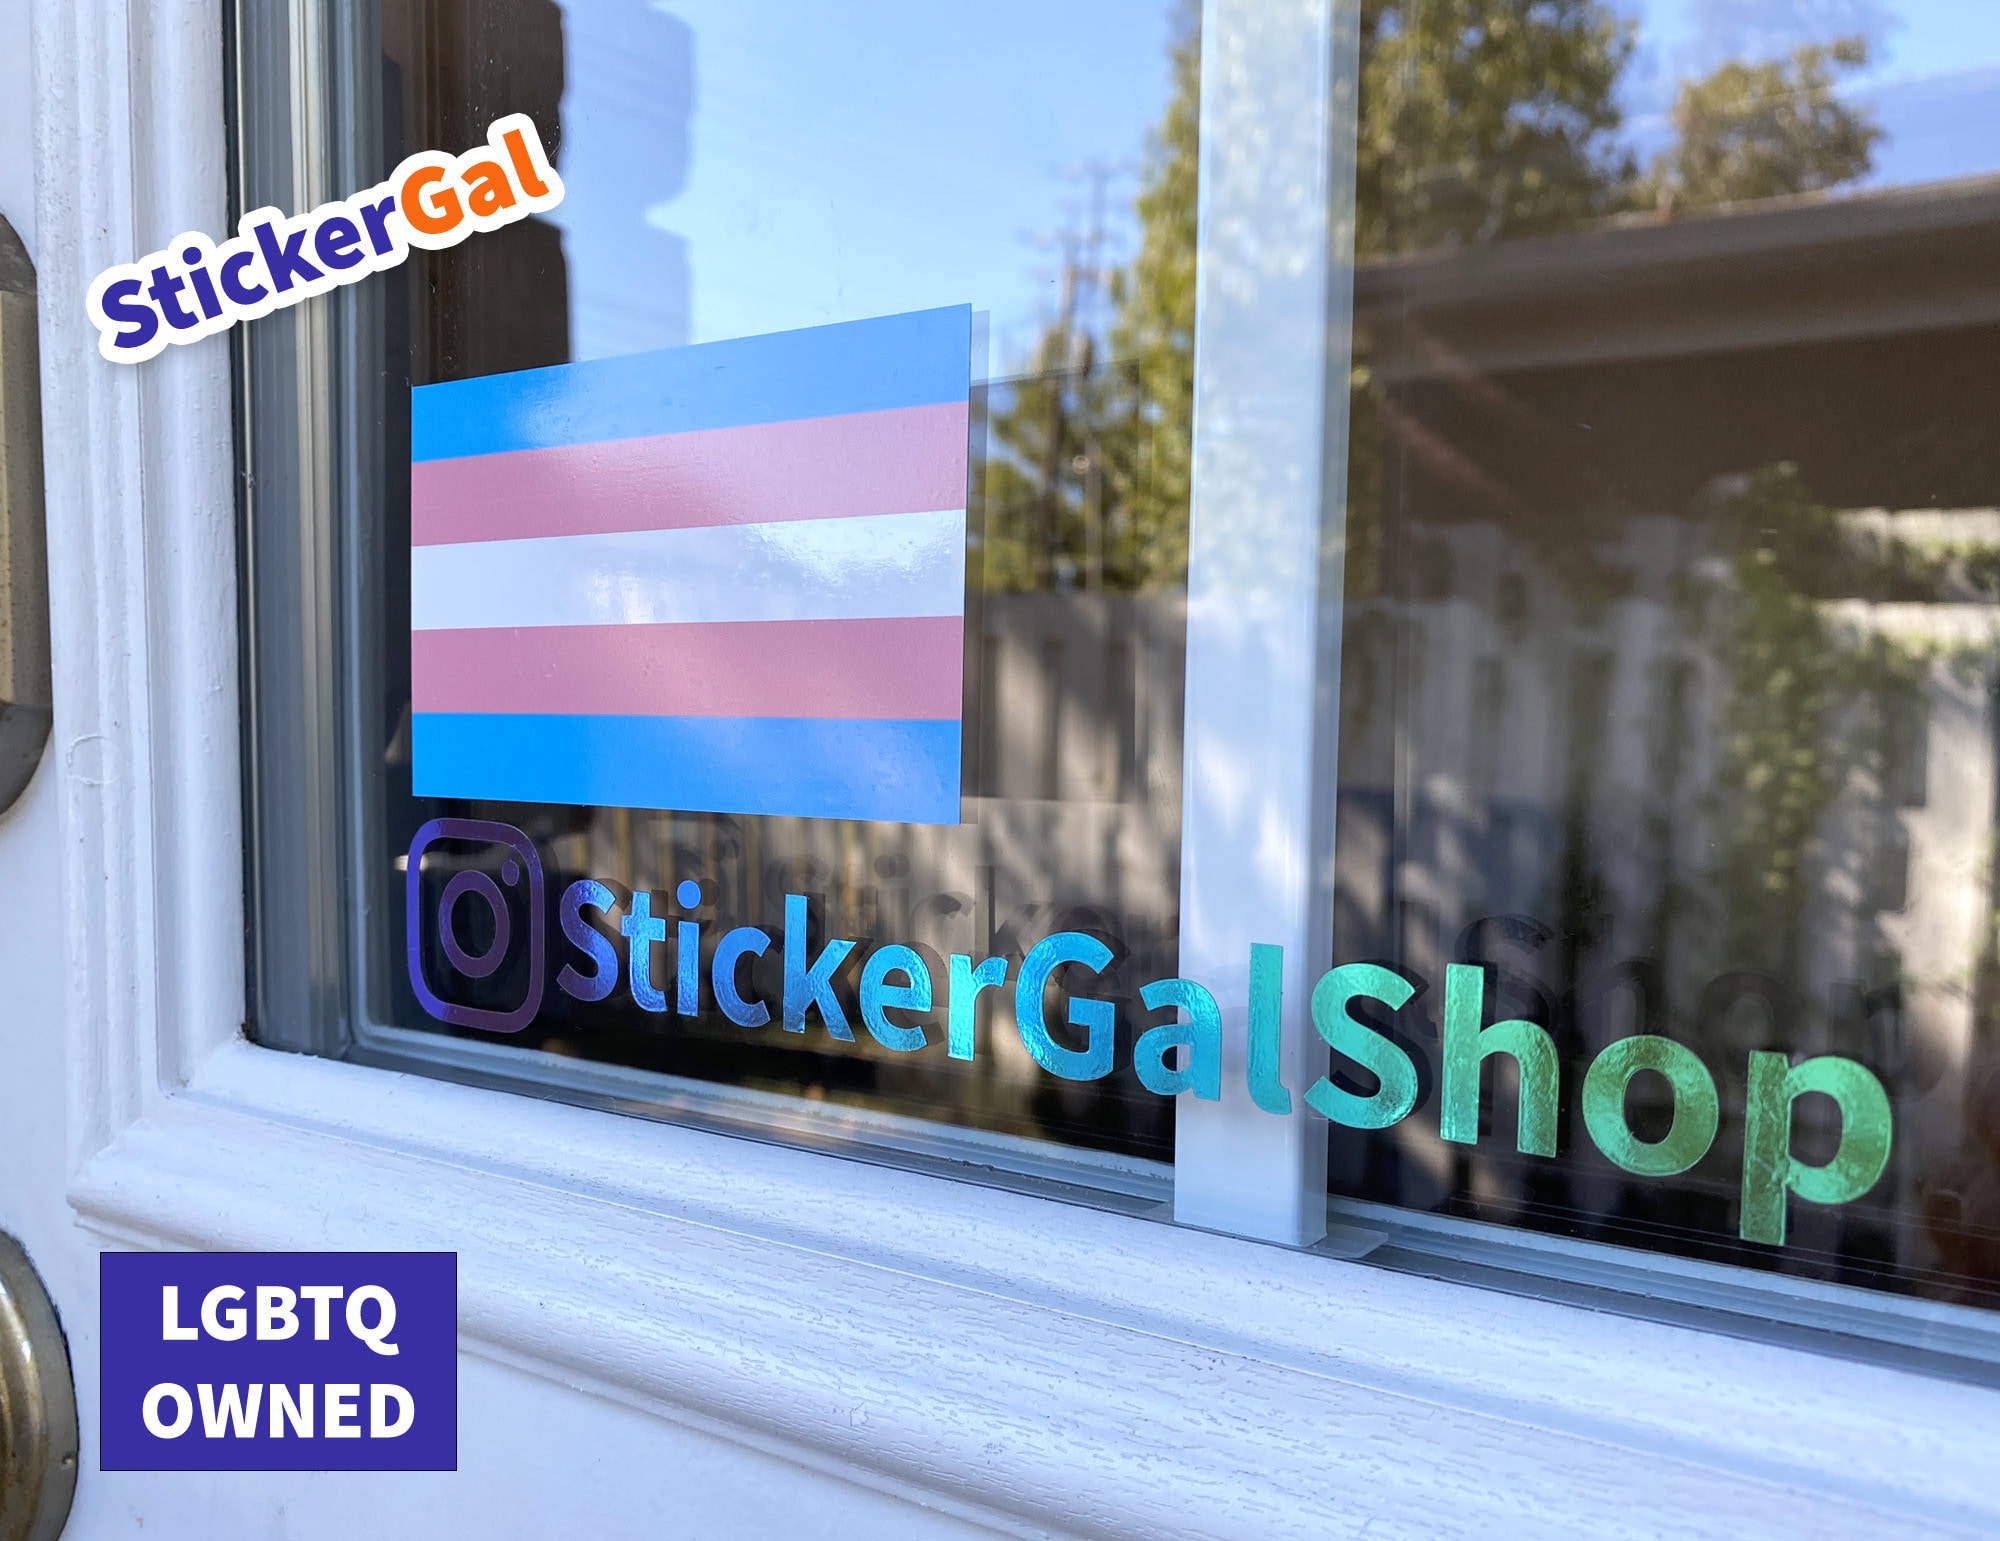 Transgender Pride Flag Decal Trans Pride Flag Sticker Neutral